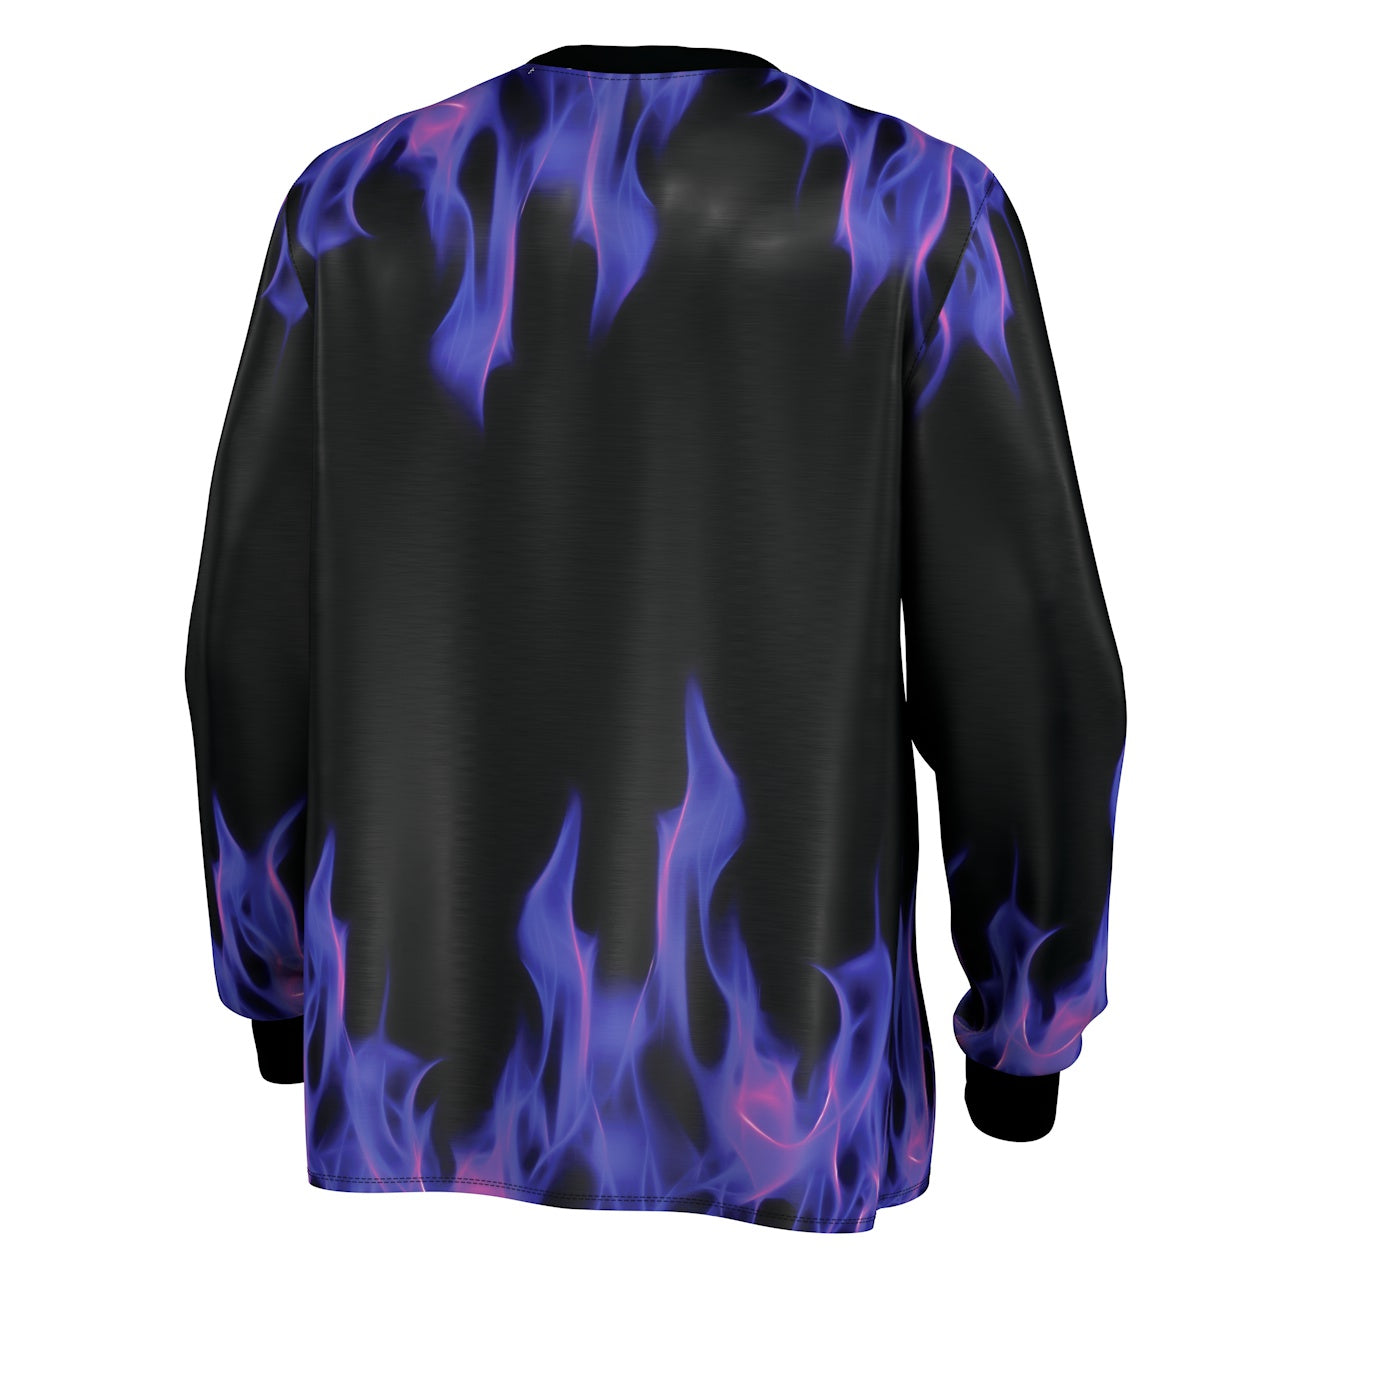  FGJFGGFR 3D T-Shirt Purple Flame Quick Dry Top Unisex